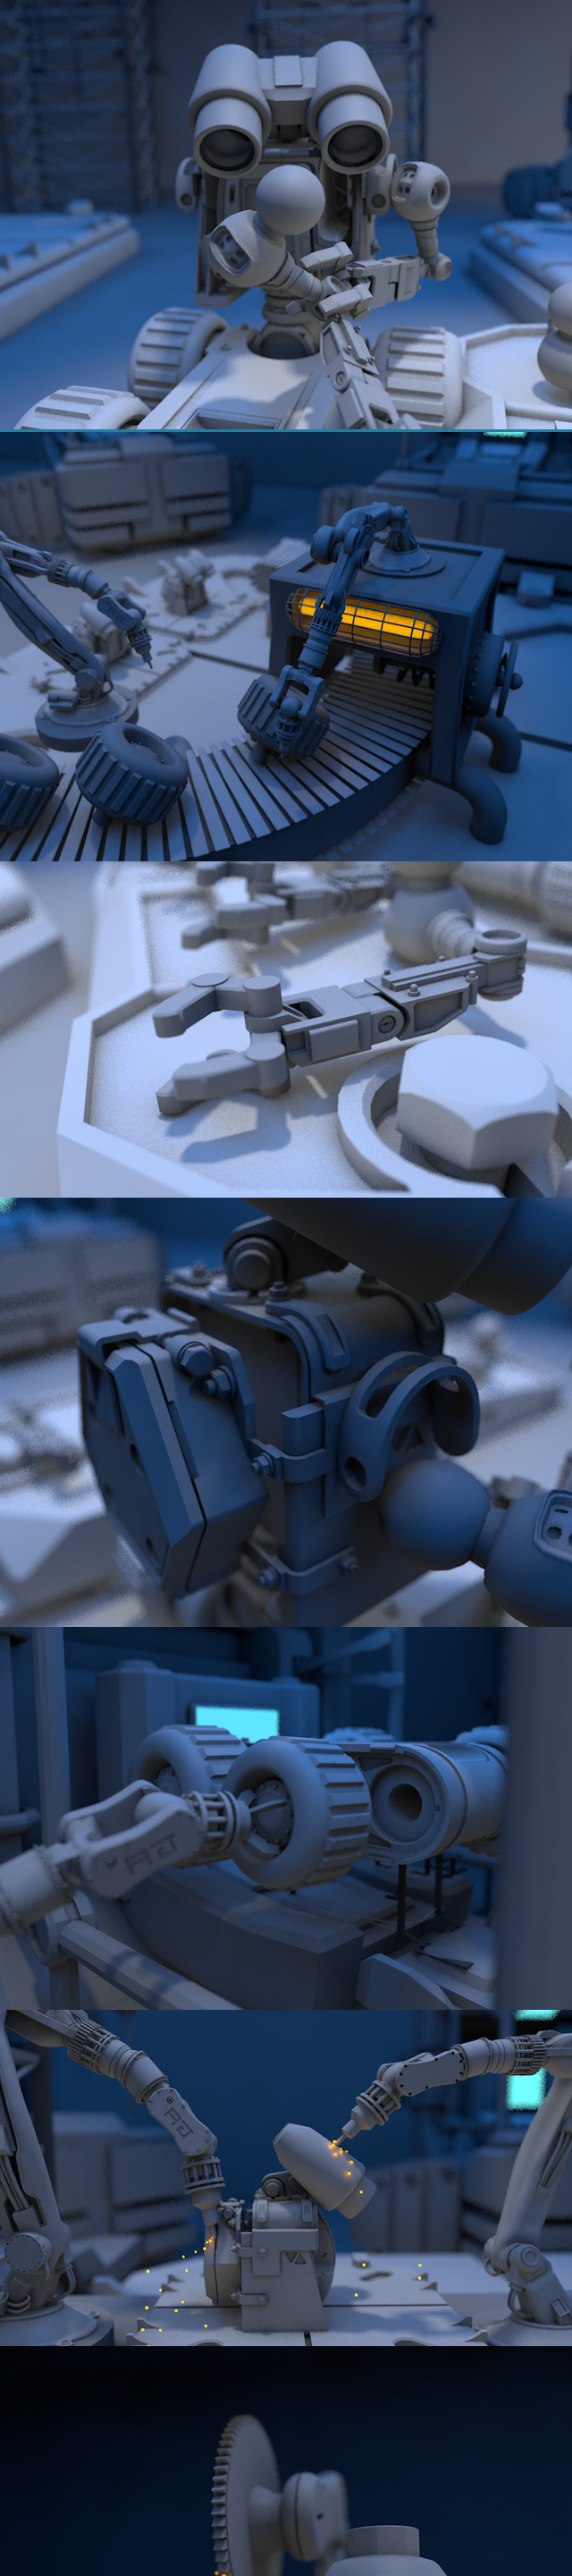 机器人工厂生产车间机械臂轮子模型动画